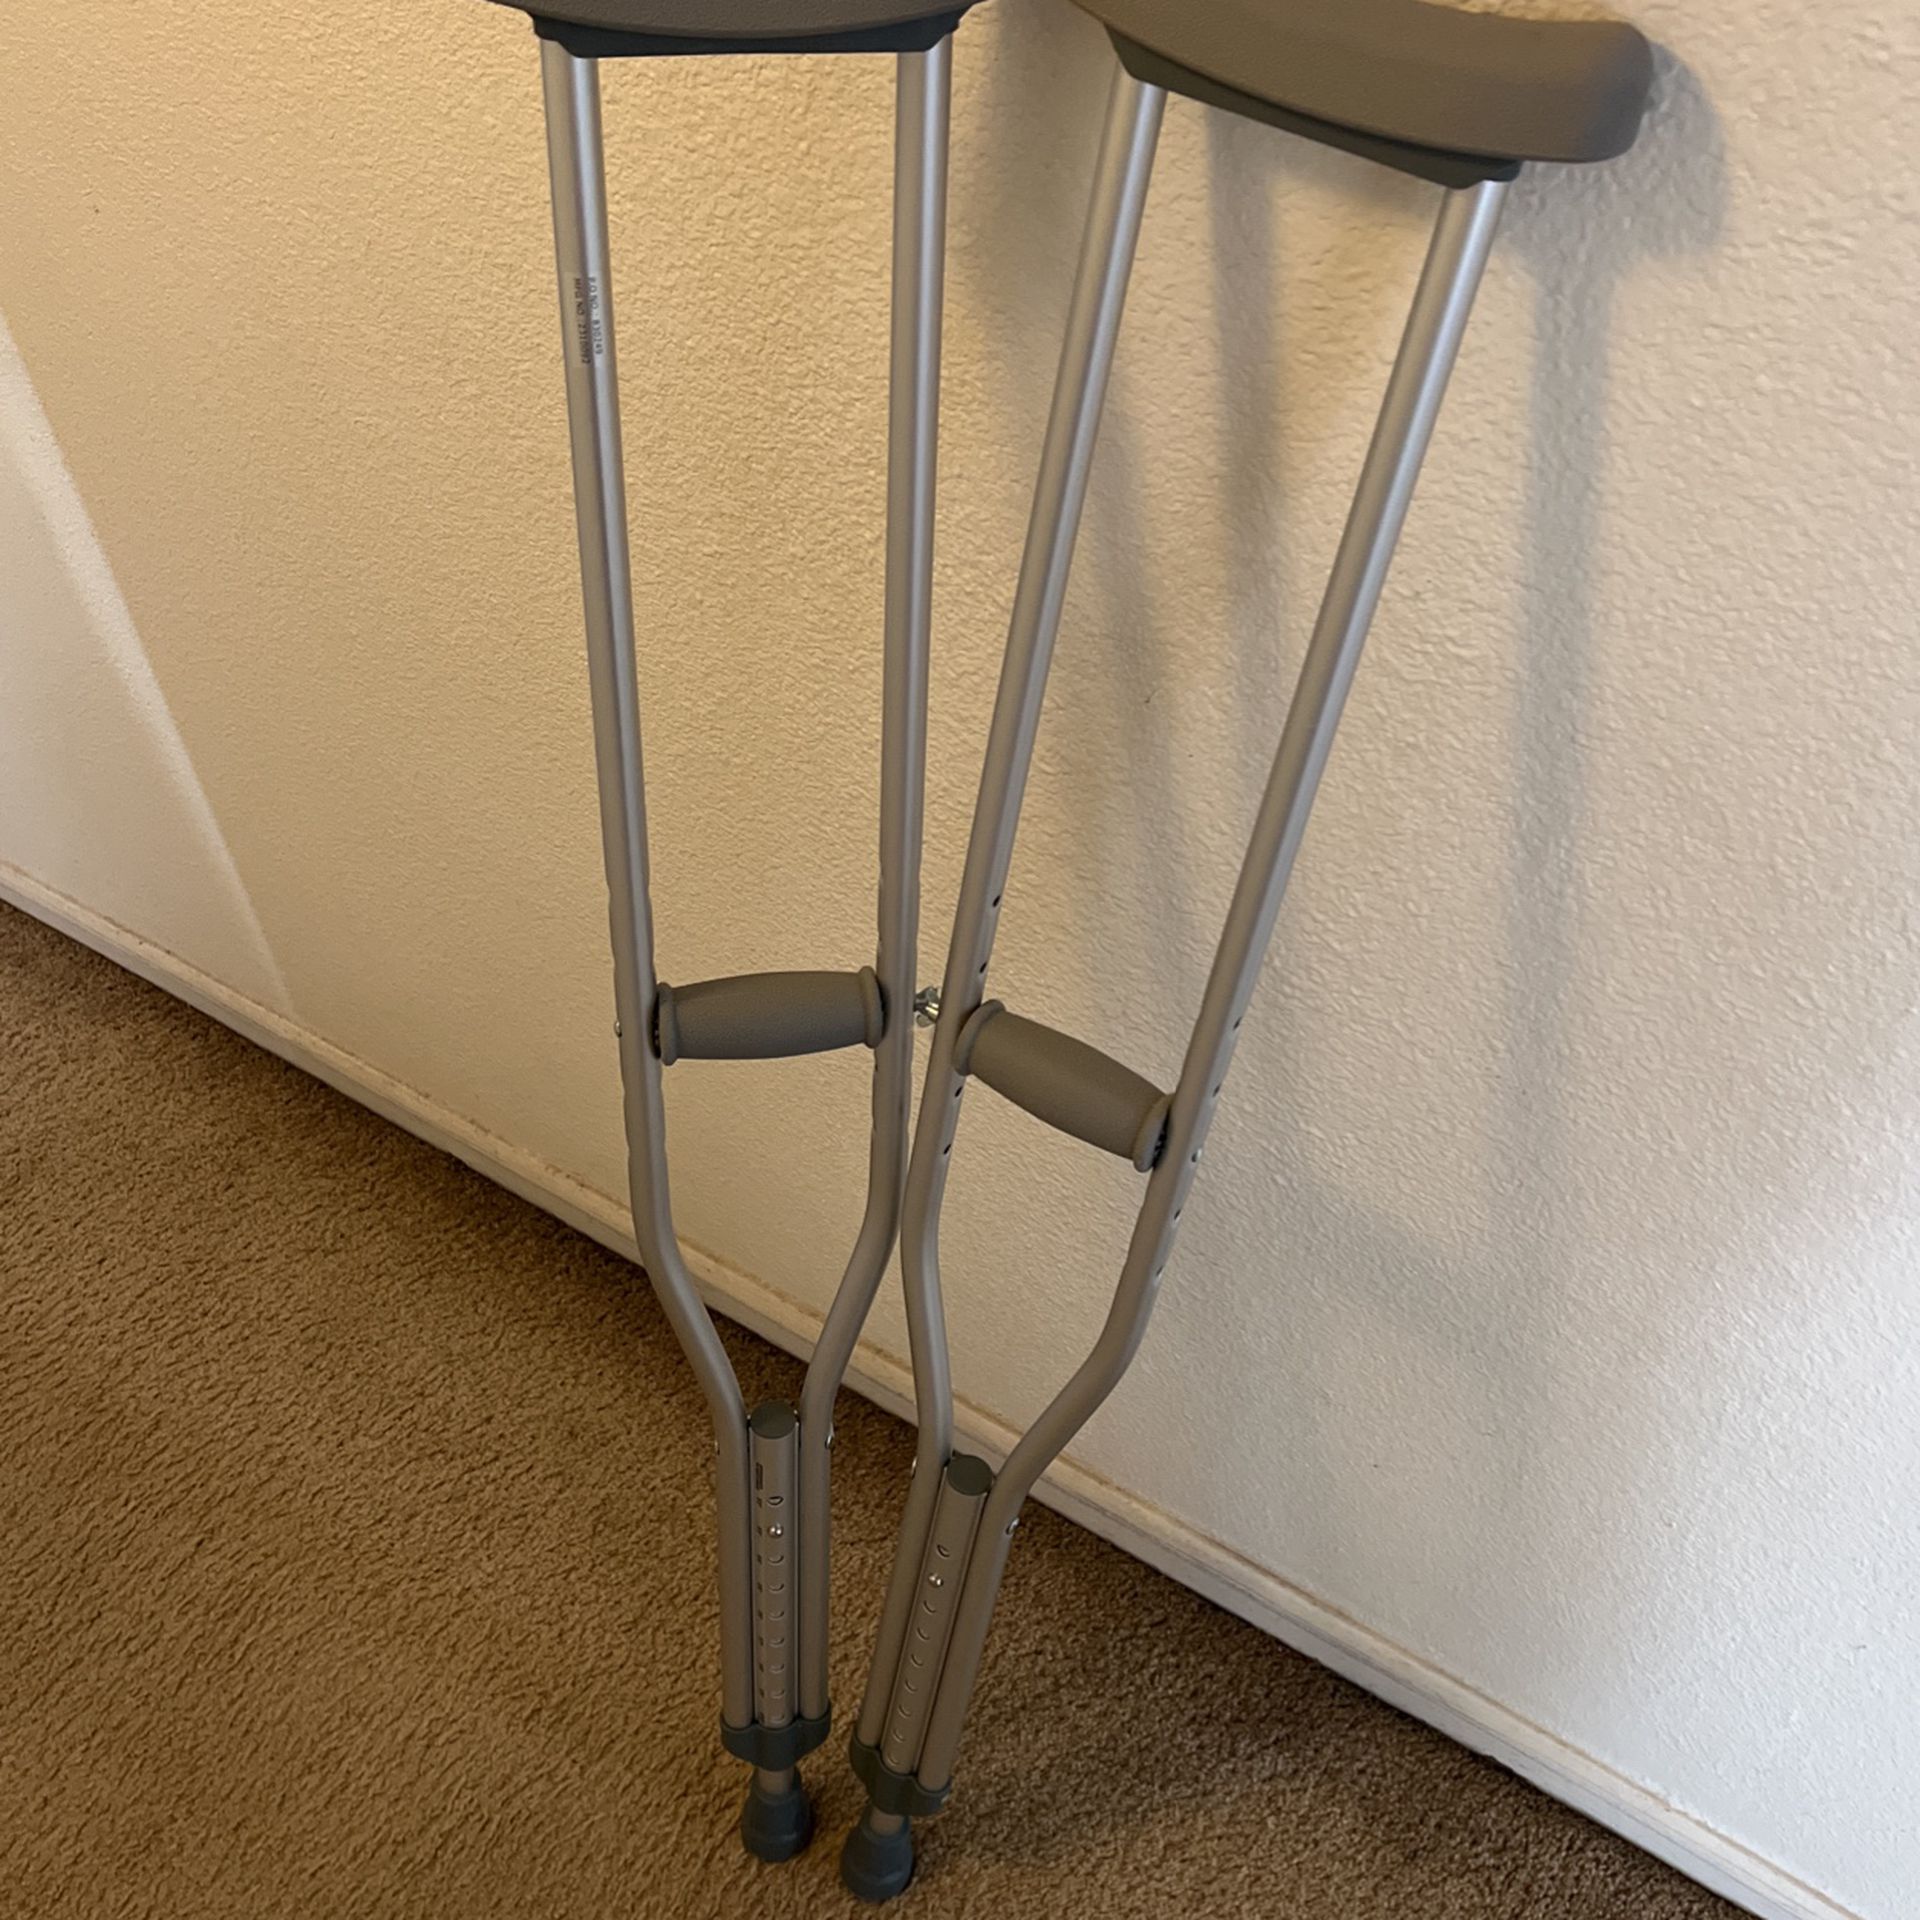 Crutches 1 Pair